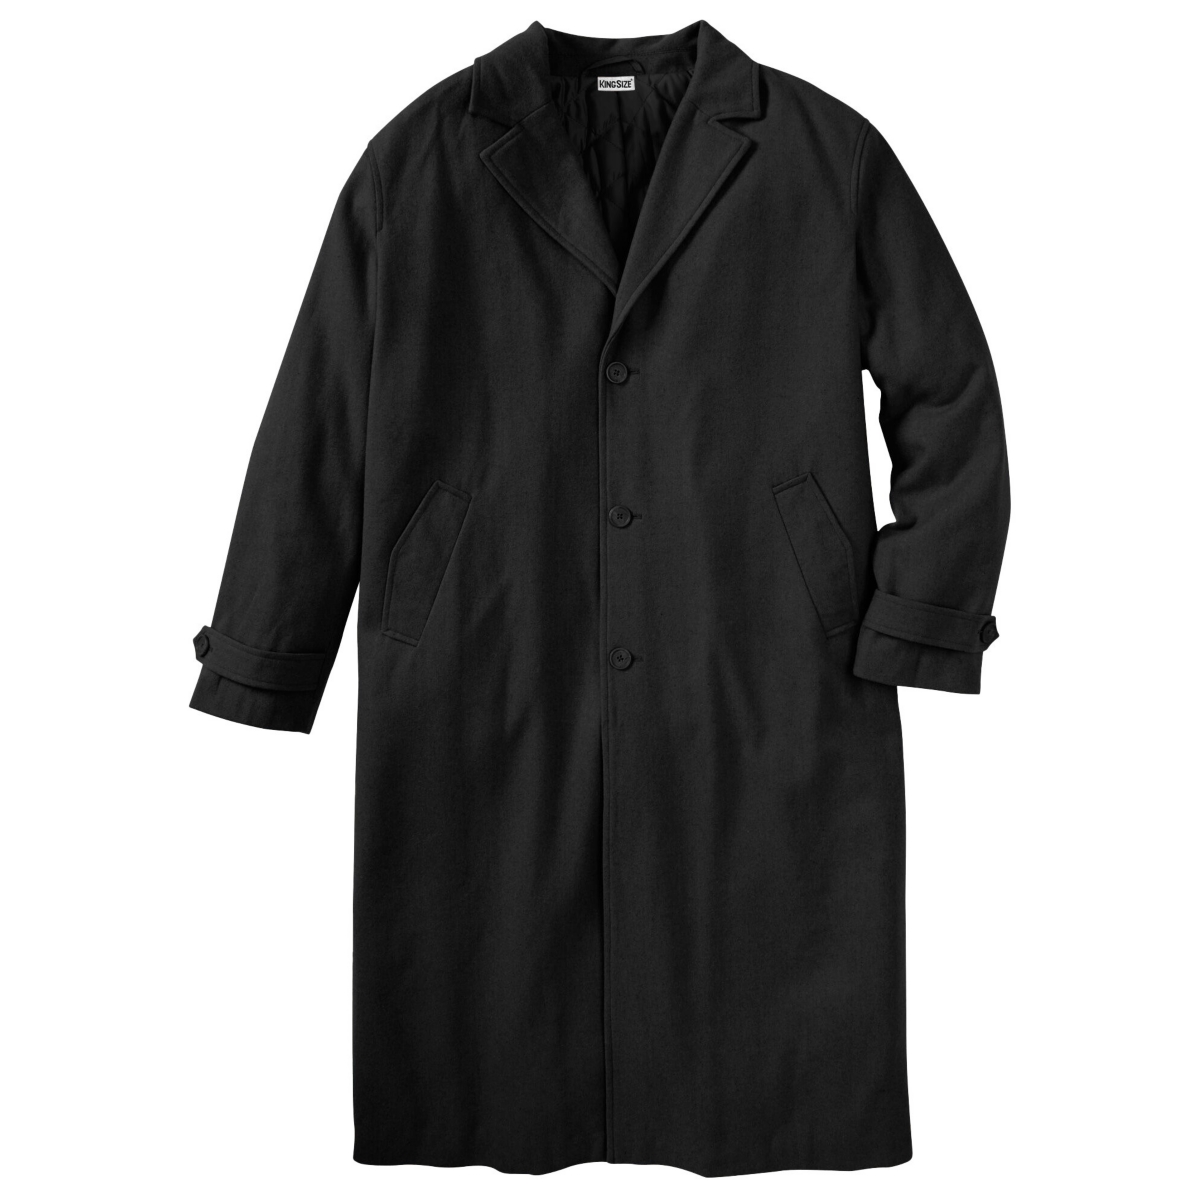 Big & Tall Wool-Blend Long Overcoat - Charcoal herringbone